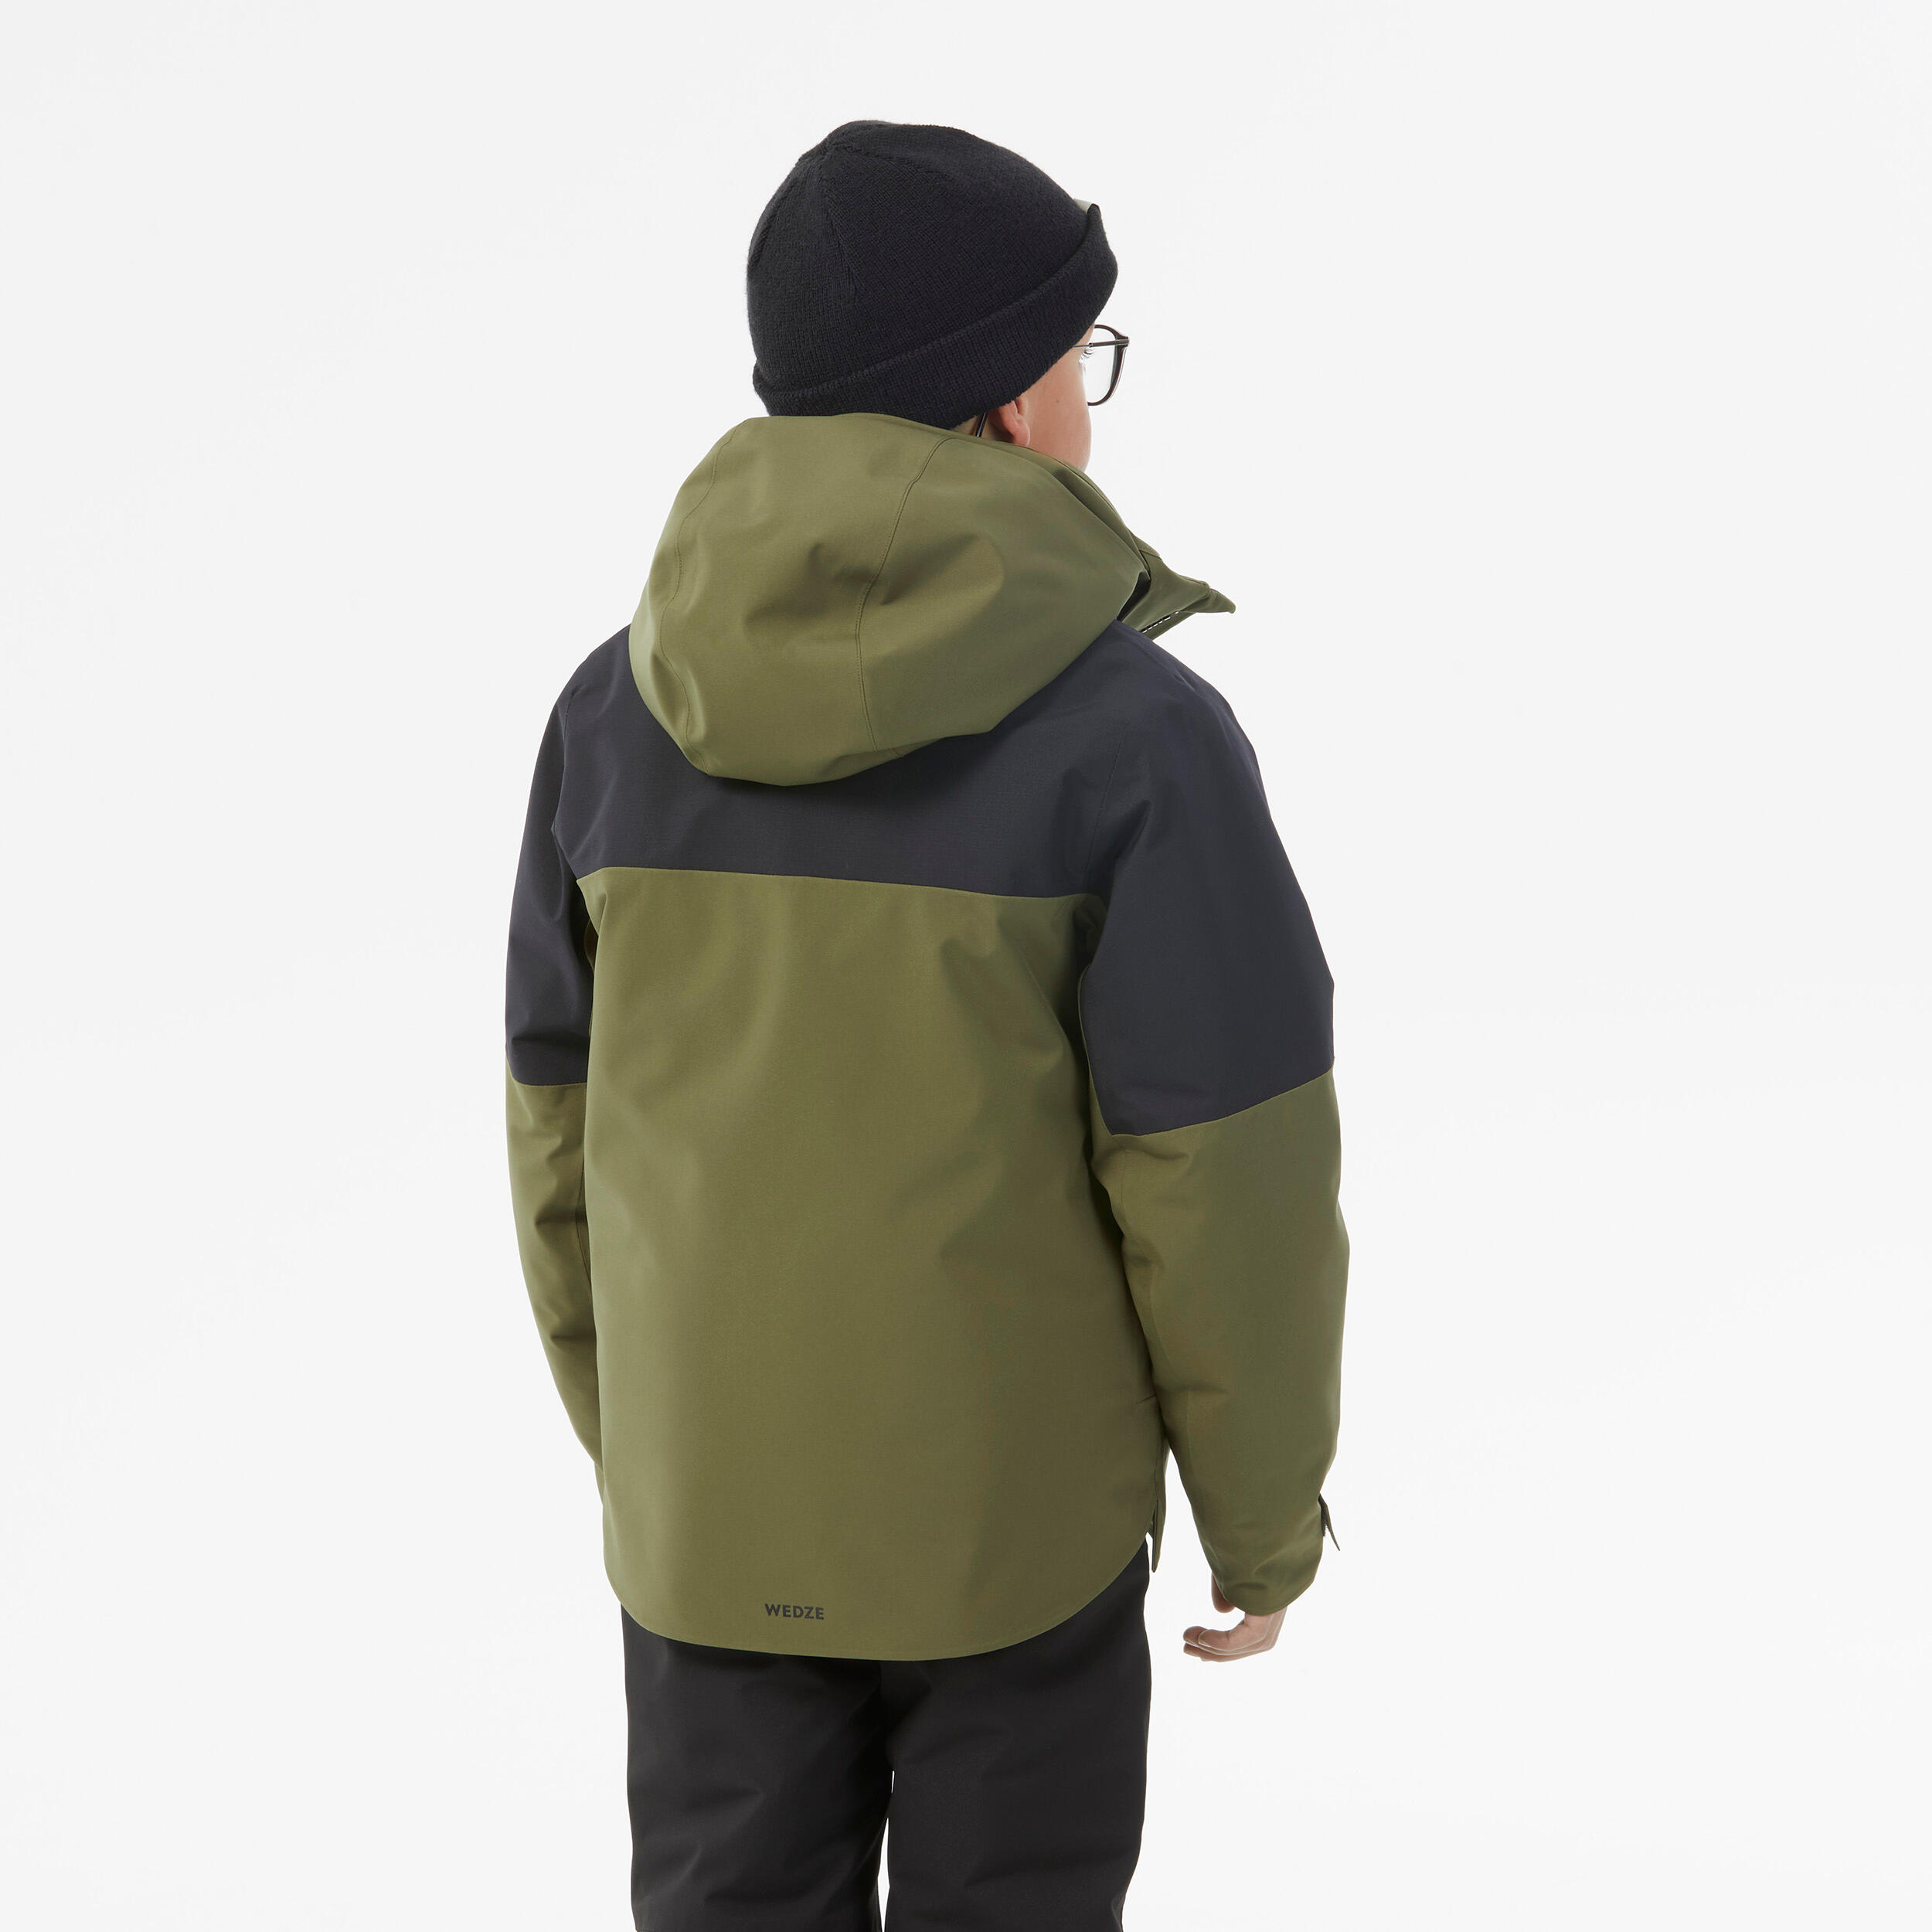 Kids’ warm and waterproof ski jacket 900 - Khaki 5/13